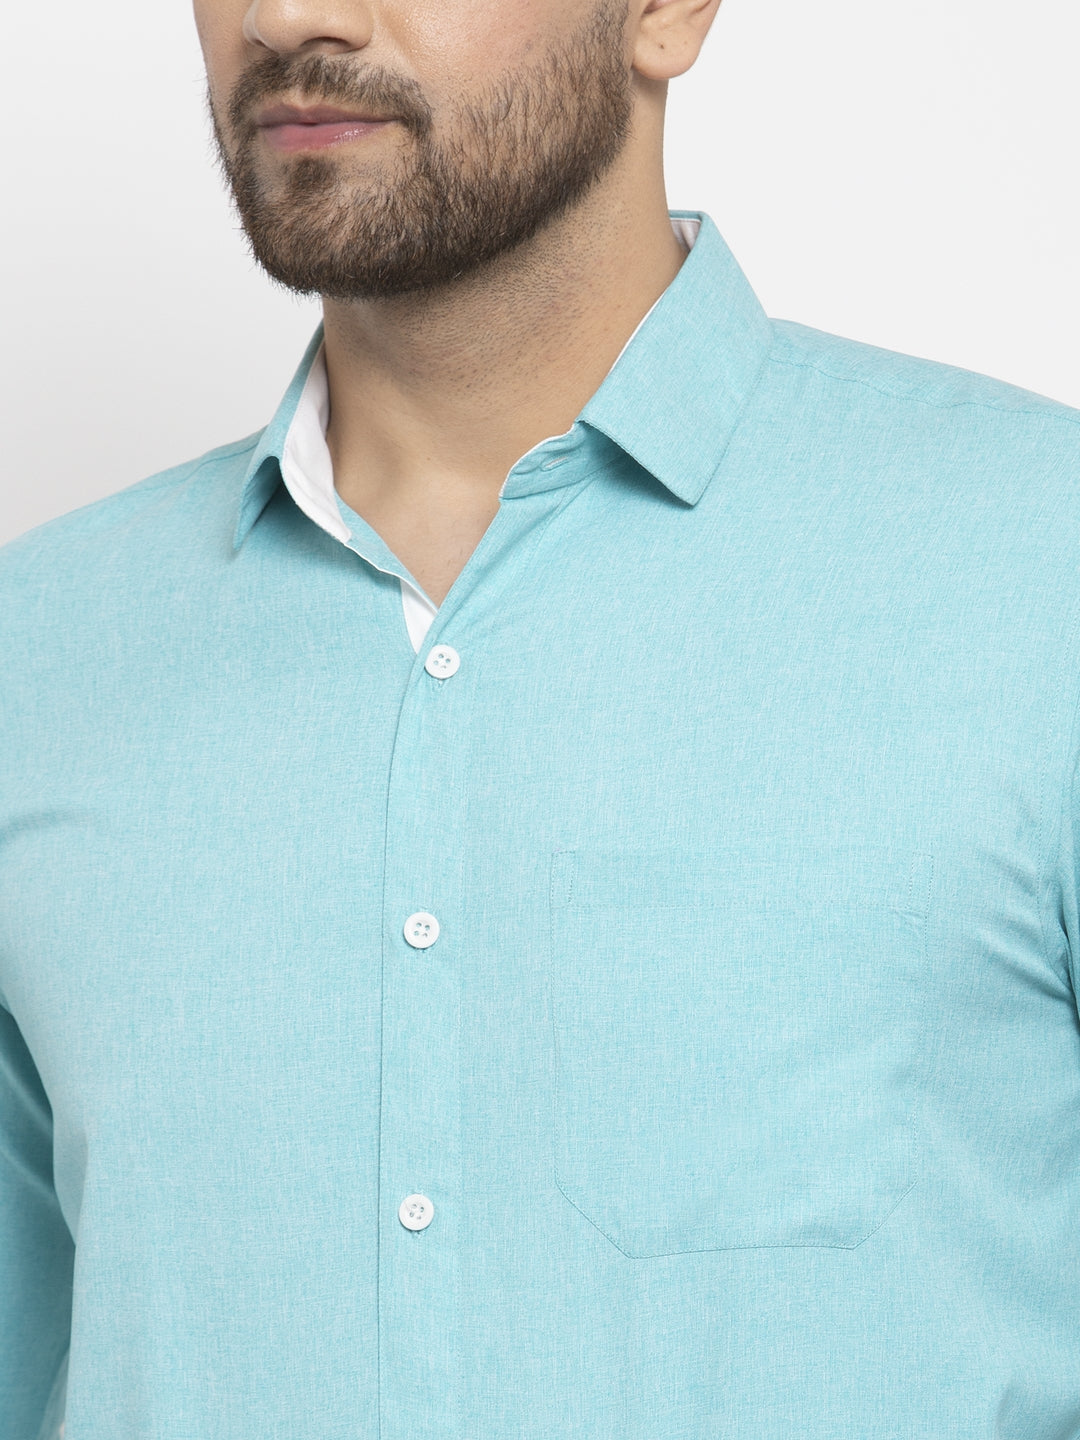 Men's Aqua Blue Formal Shirt with white detailing ( SF 419Aqua ) - Jainish